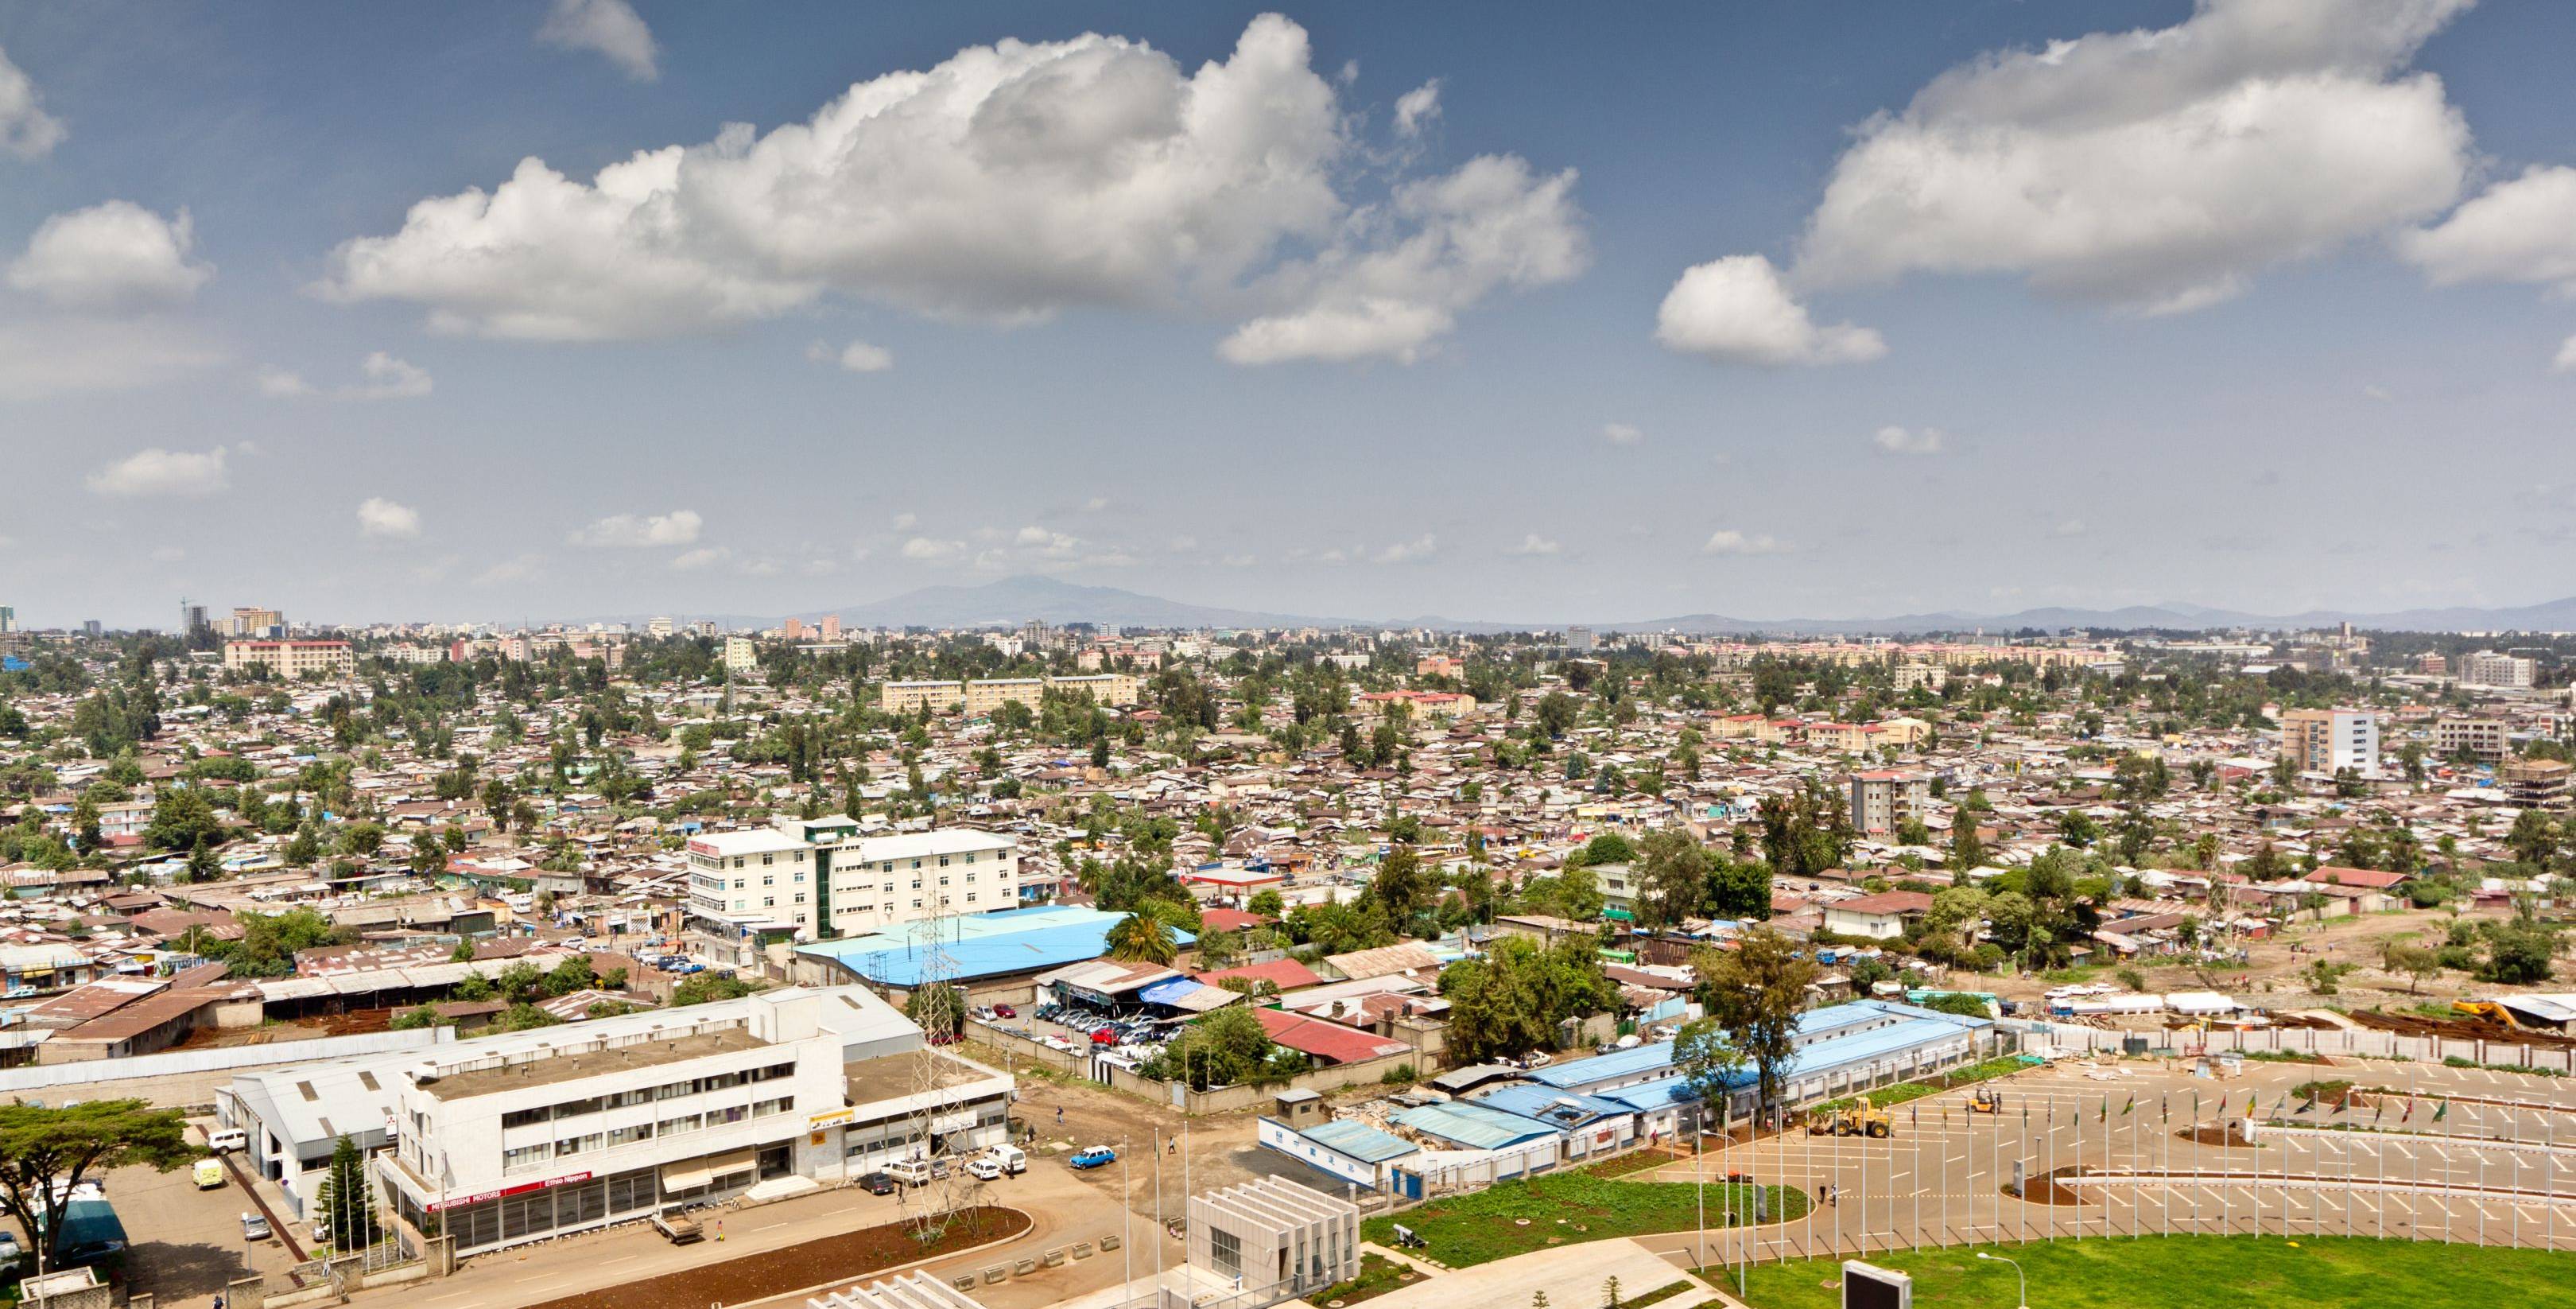 ¡Bienvenidos a Etiopía! Visita de la capital